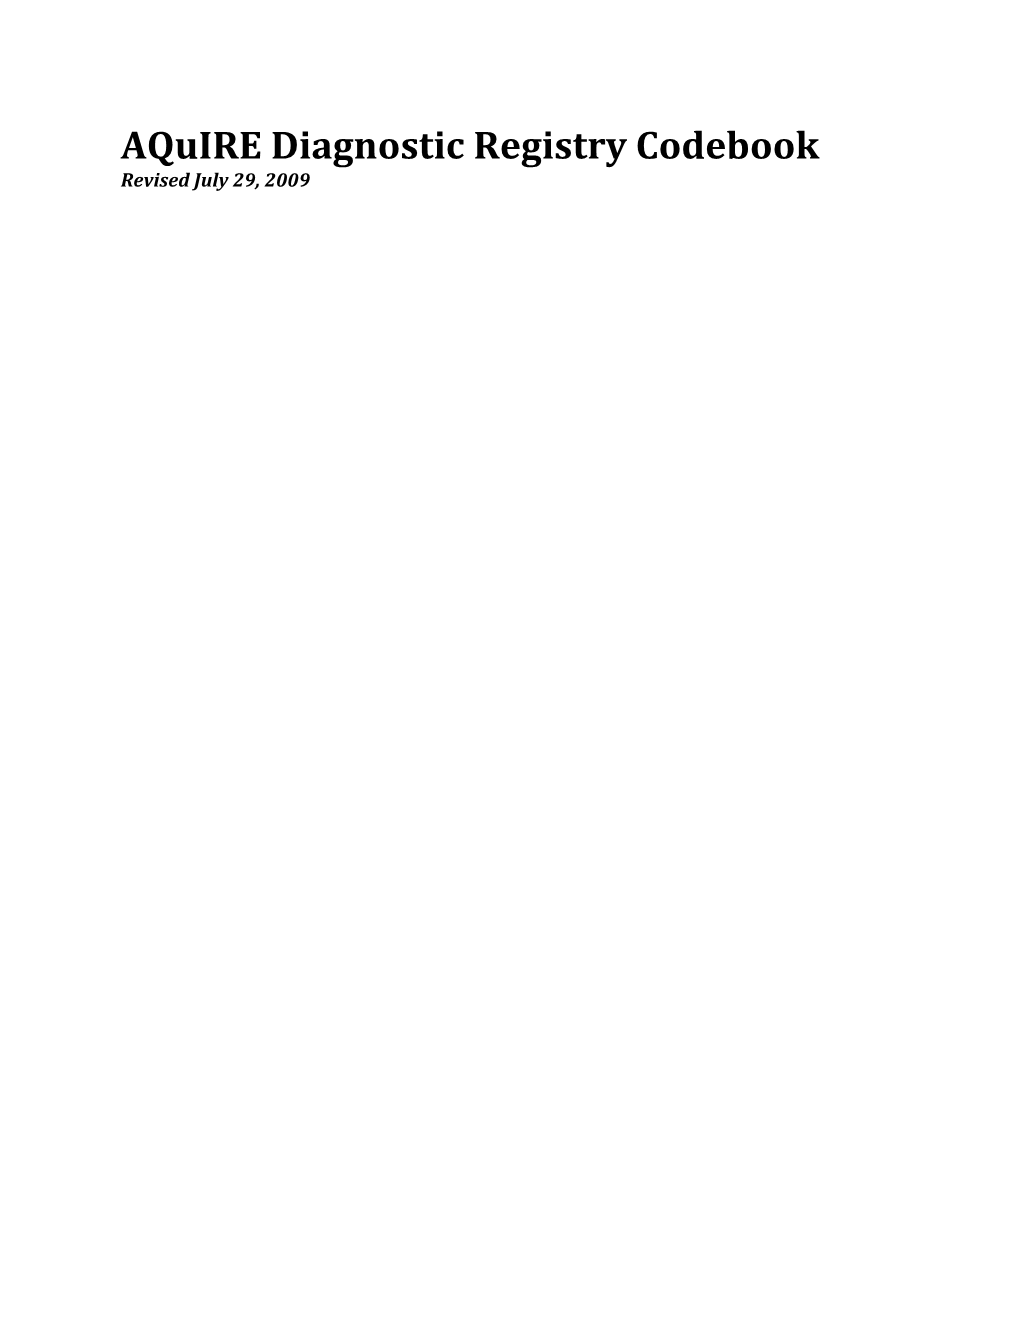 Aquire Diagnostic Registry Codebook